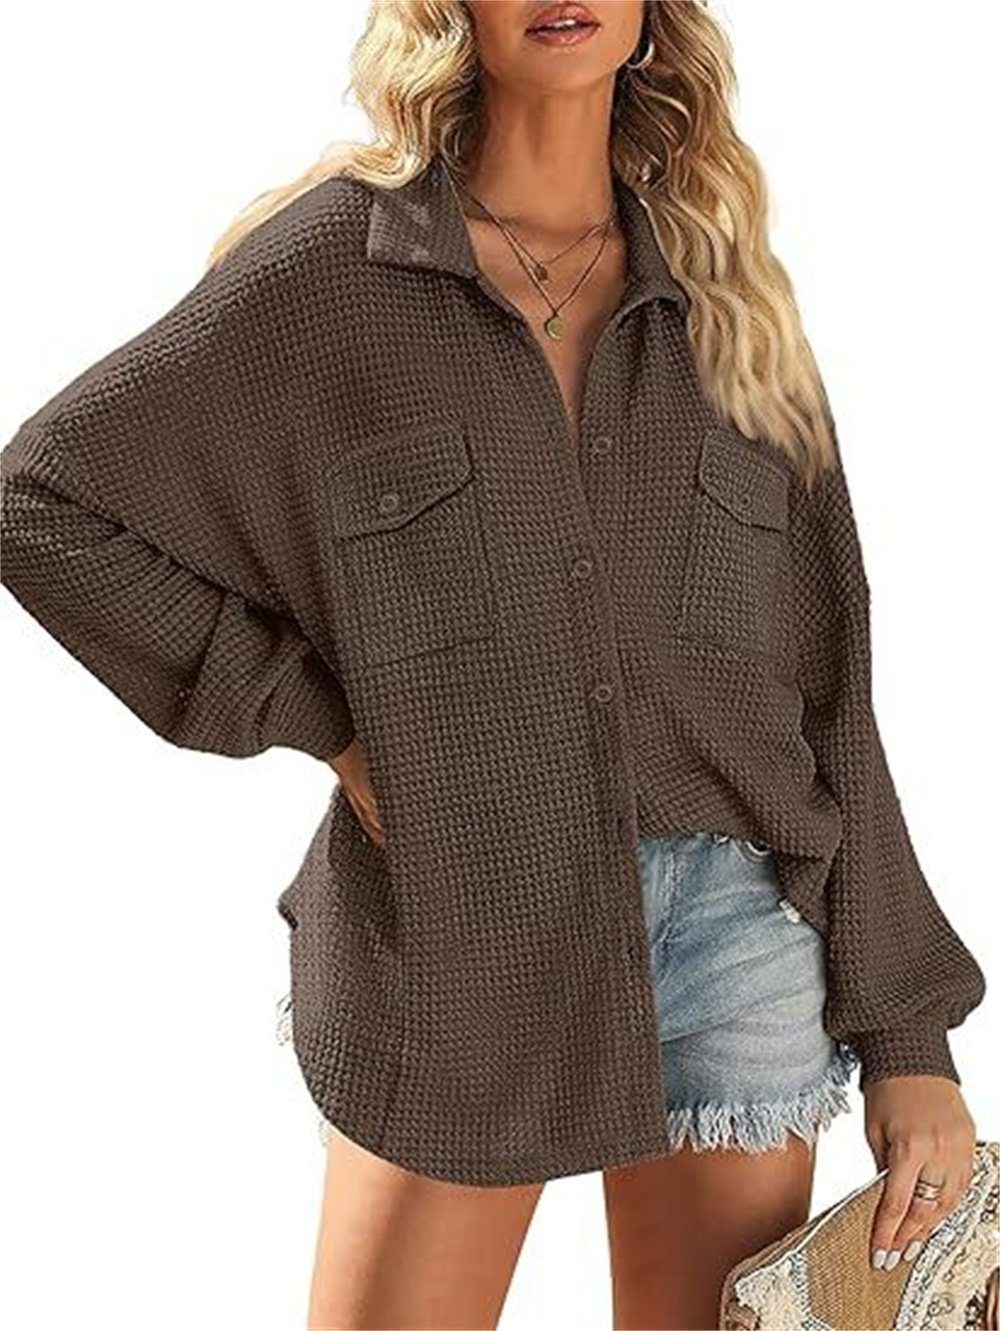 B.X Wirkmantel Damen Waffel Jacke gestrickt Strickjacke Mantel mit Brusttasche Geknöpftes V-Ausschnitt übergroßes lässiges langärmeliges Shirt Top braun